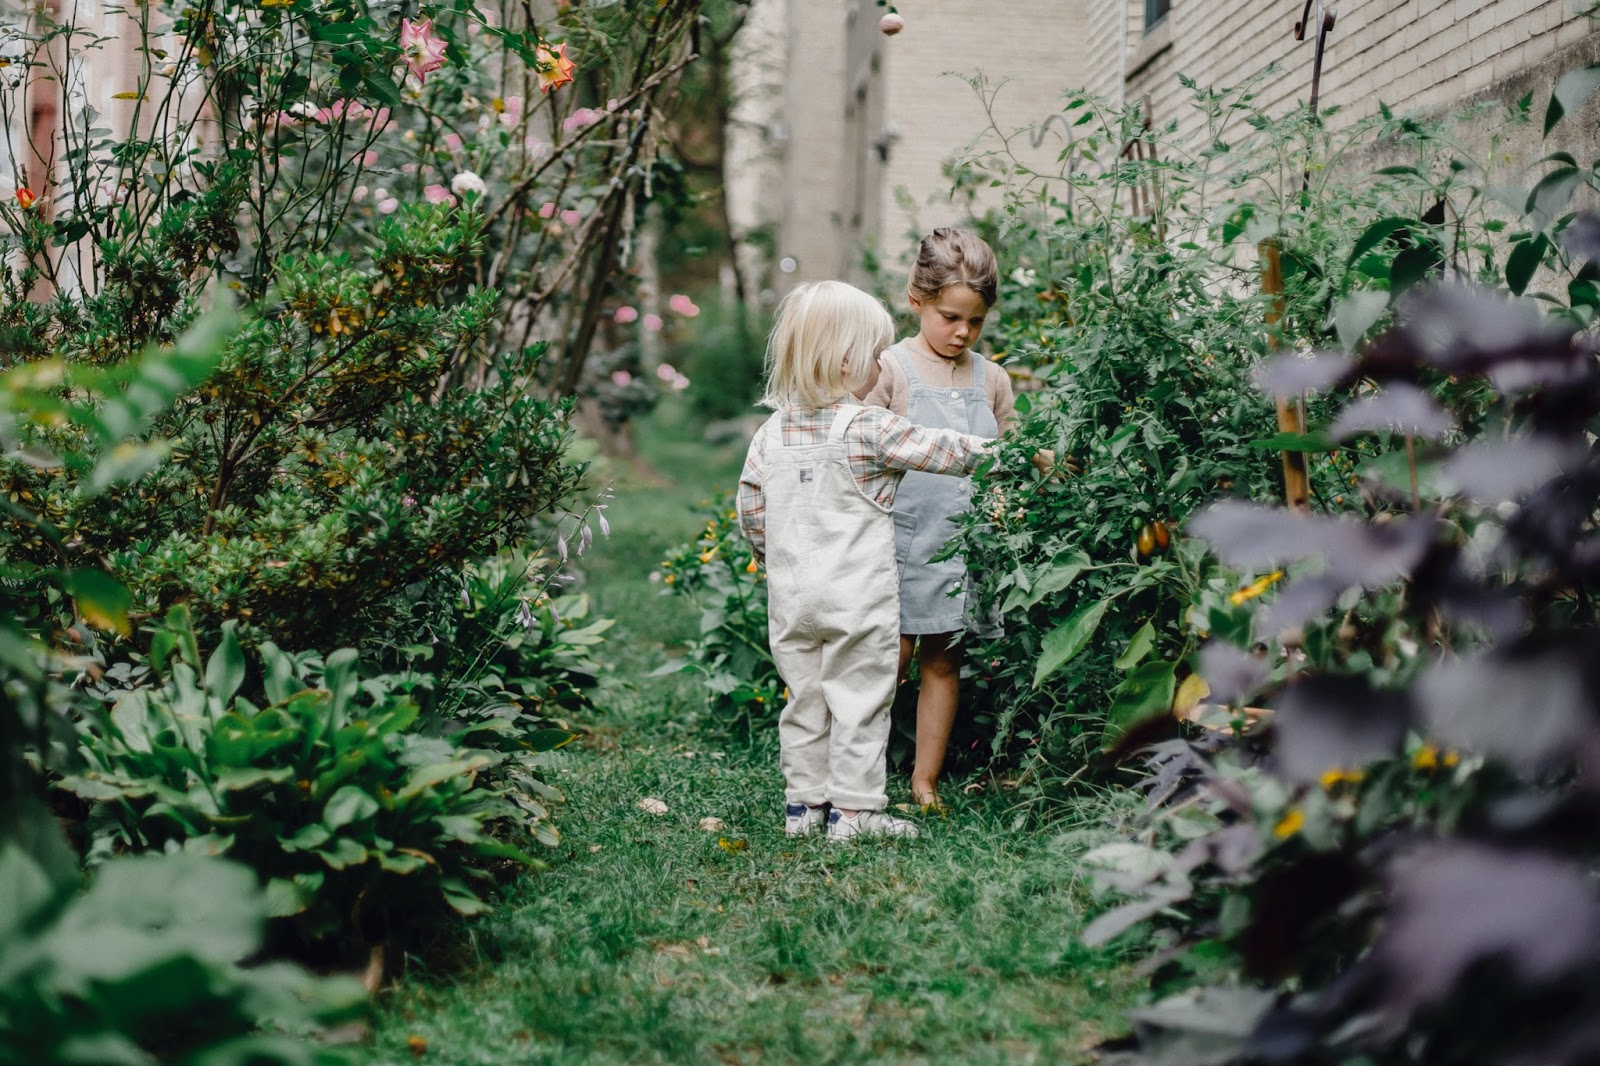 Two children in a garden 